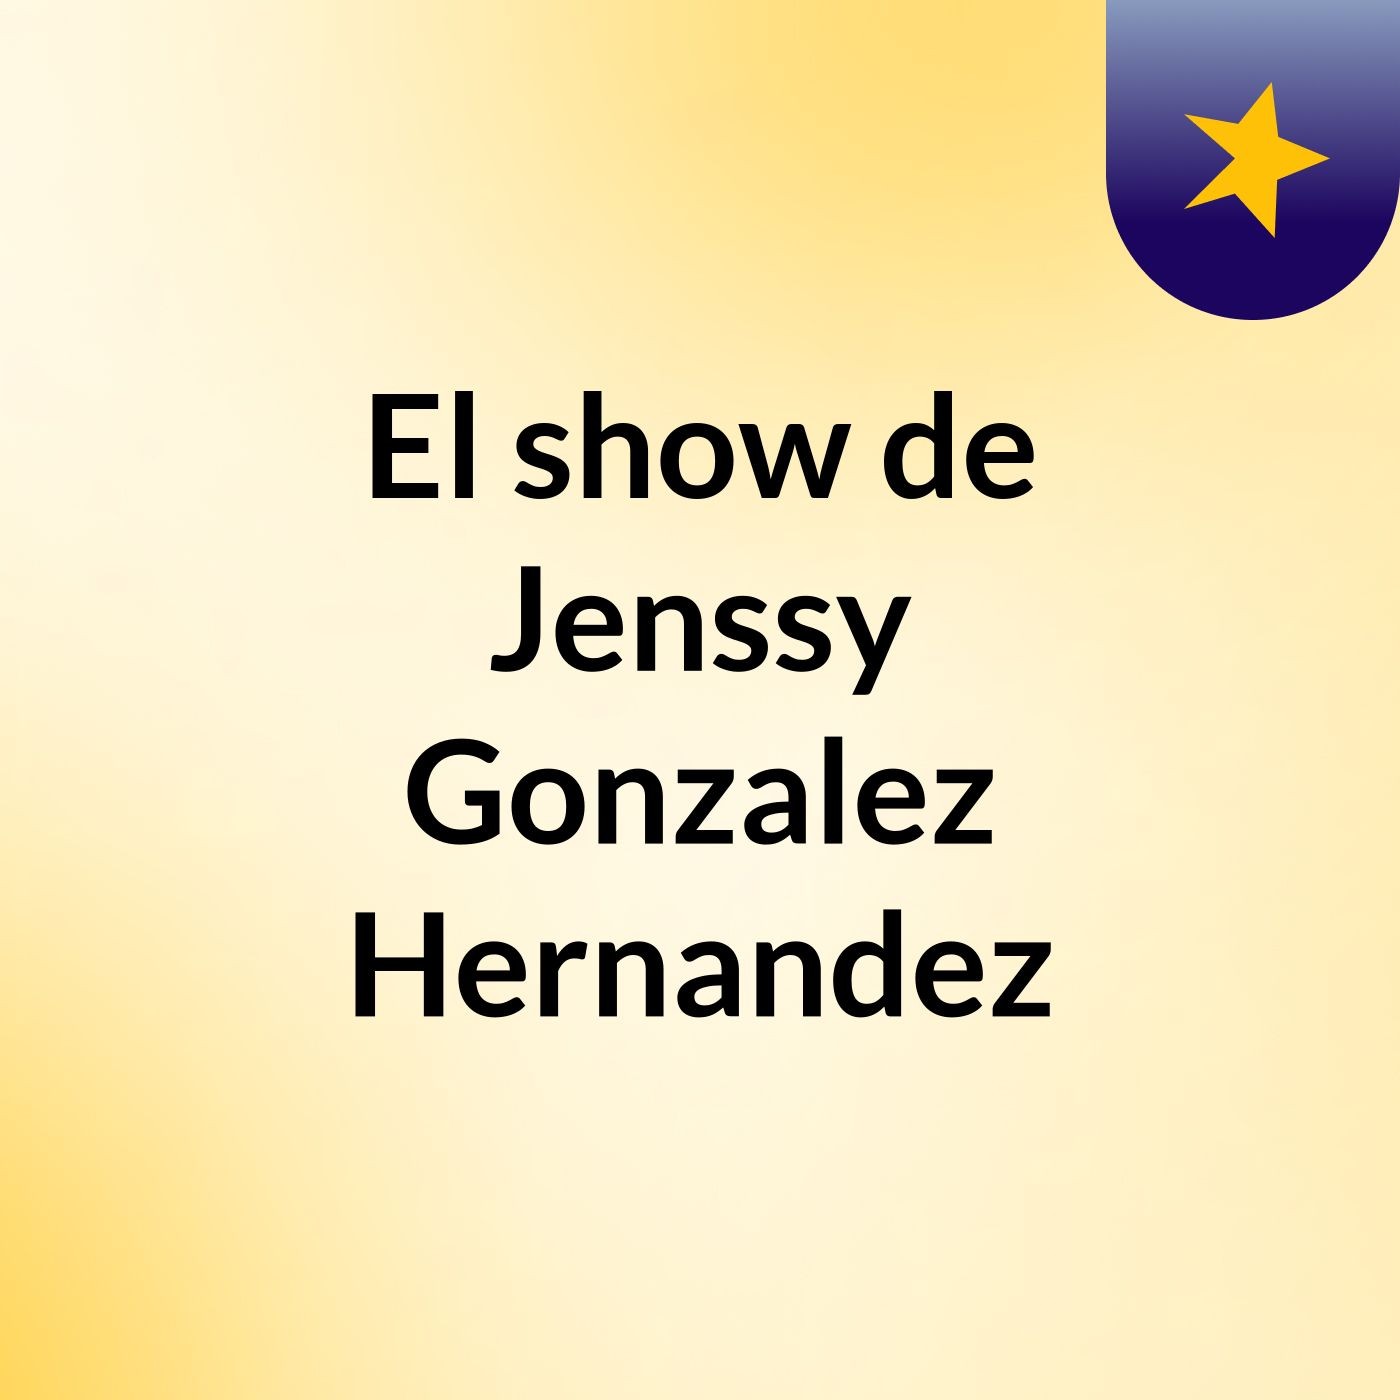 La Noche De Los Feos - El show de Jenssy Gonzalez Hernandez